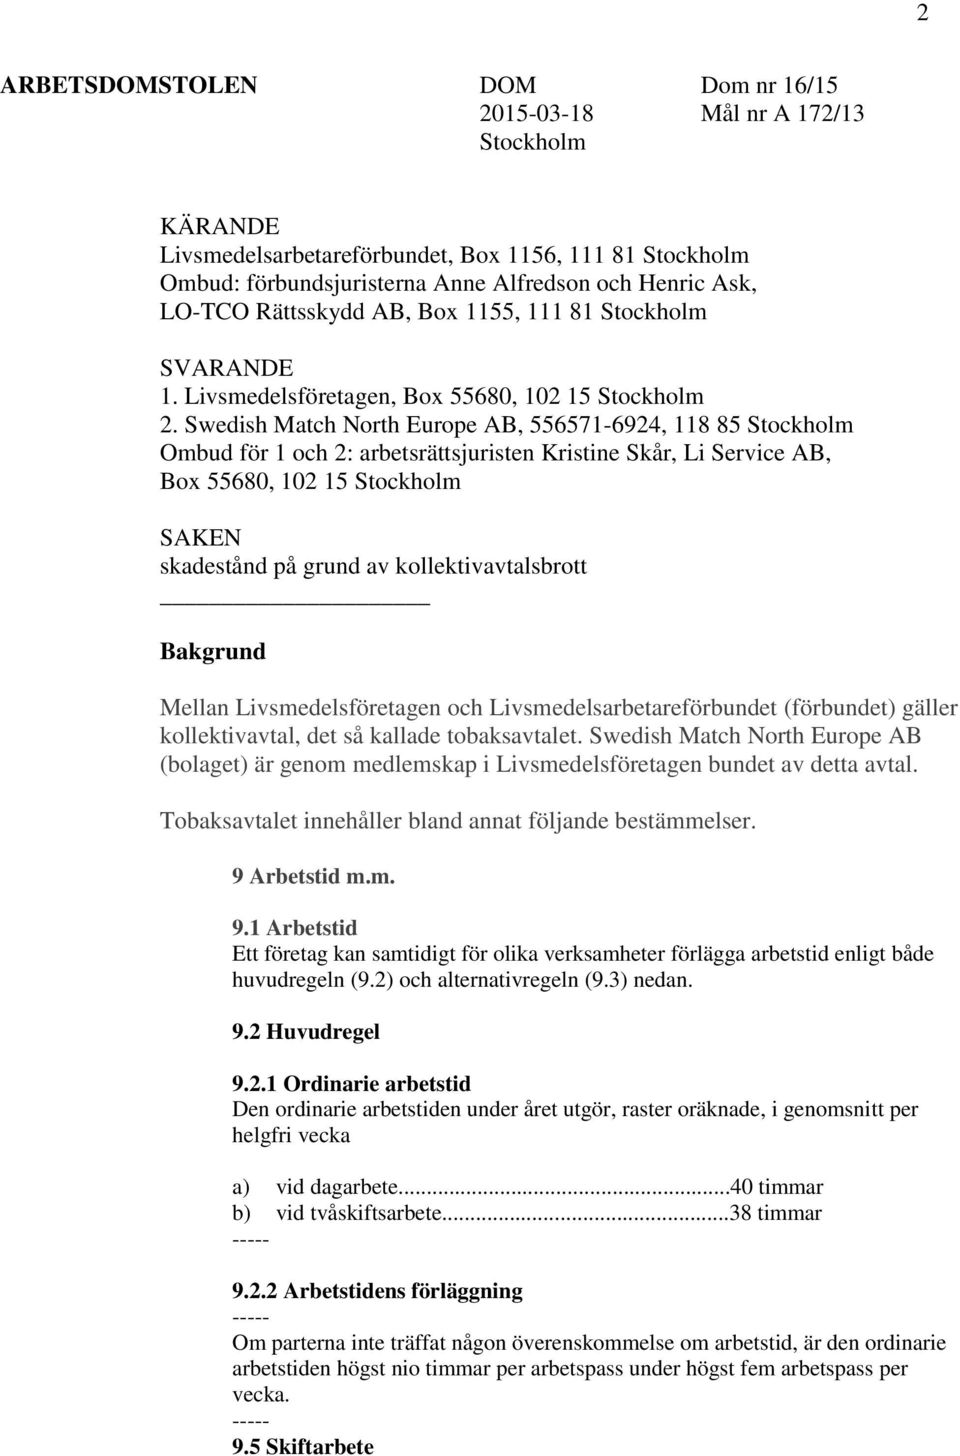 Swedish Match North Europe AB, 556571-6924, 118 85 Stockholm Ombud för 1 och 2: arbetsrättsjuristen Kristine Skår, Li Service AB, Box 55680, 102 15 Stockholm SAKEN skadestånd på grund av